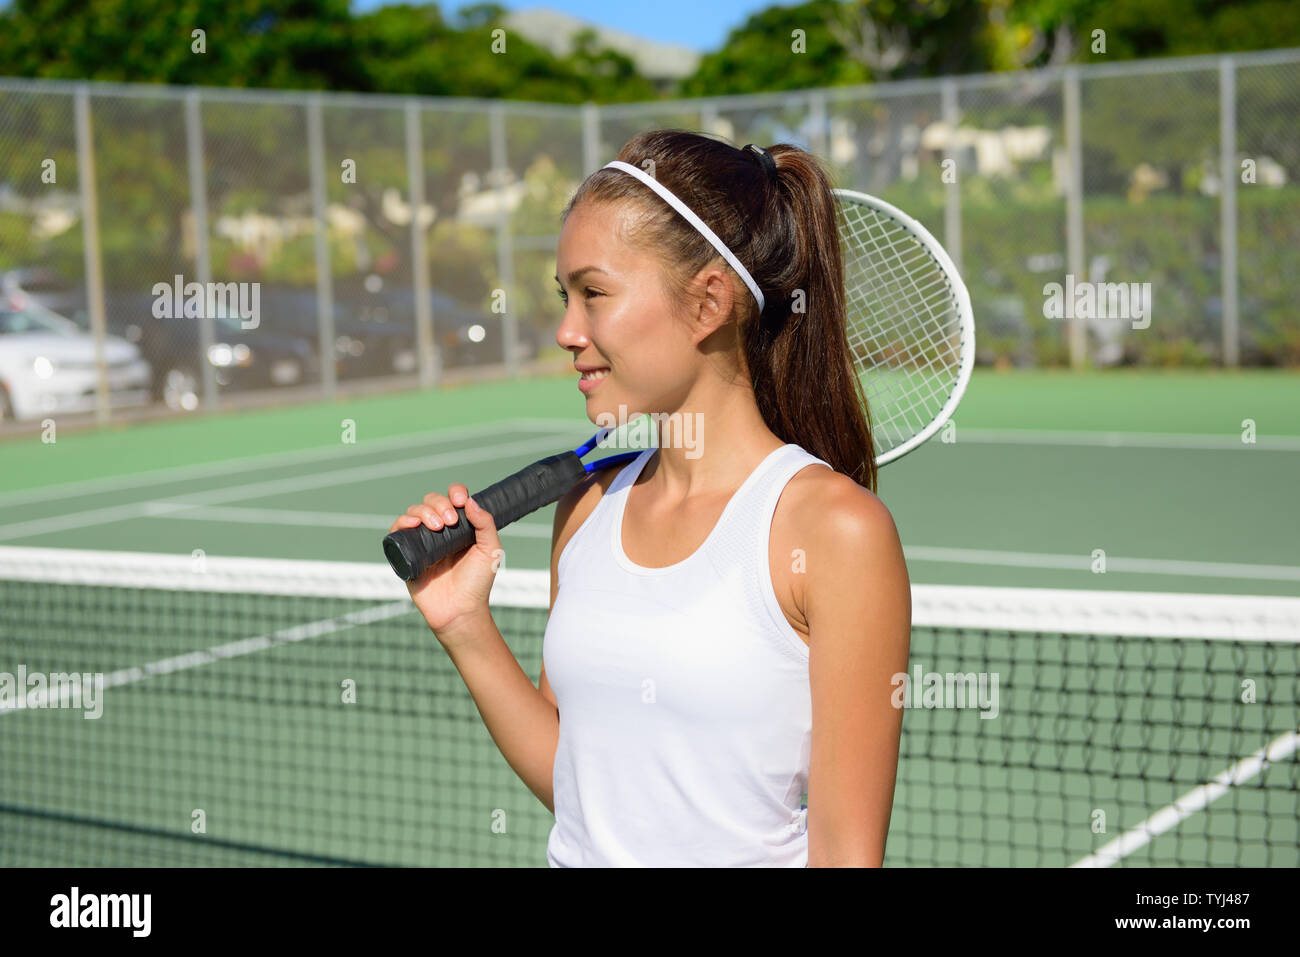 Weibliche Tennisspieler Porträt mit Tennisschläger Tennis im Freien im Sommer. Passform weiblichen Athleten tennis Leben gesund aktiv Sport und Fitness Lifestyle. Gemischte Rasse asiatischen Kaukasischen. Stockfoto